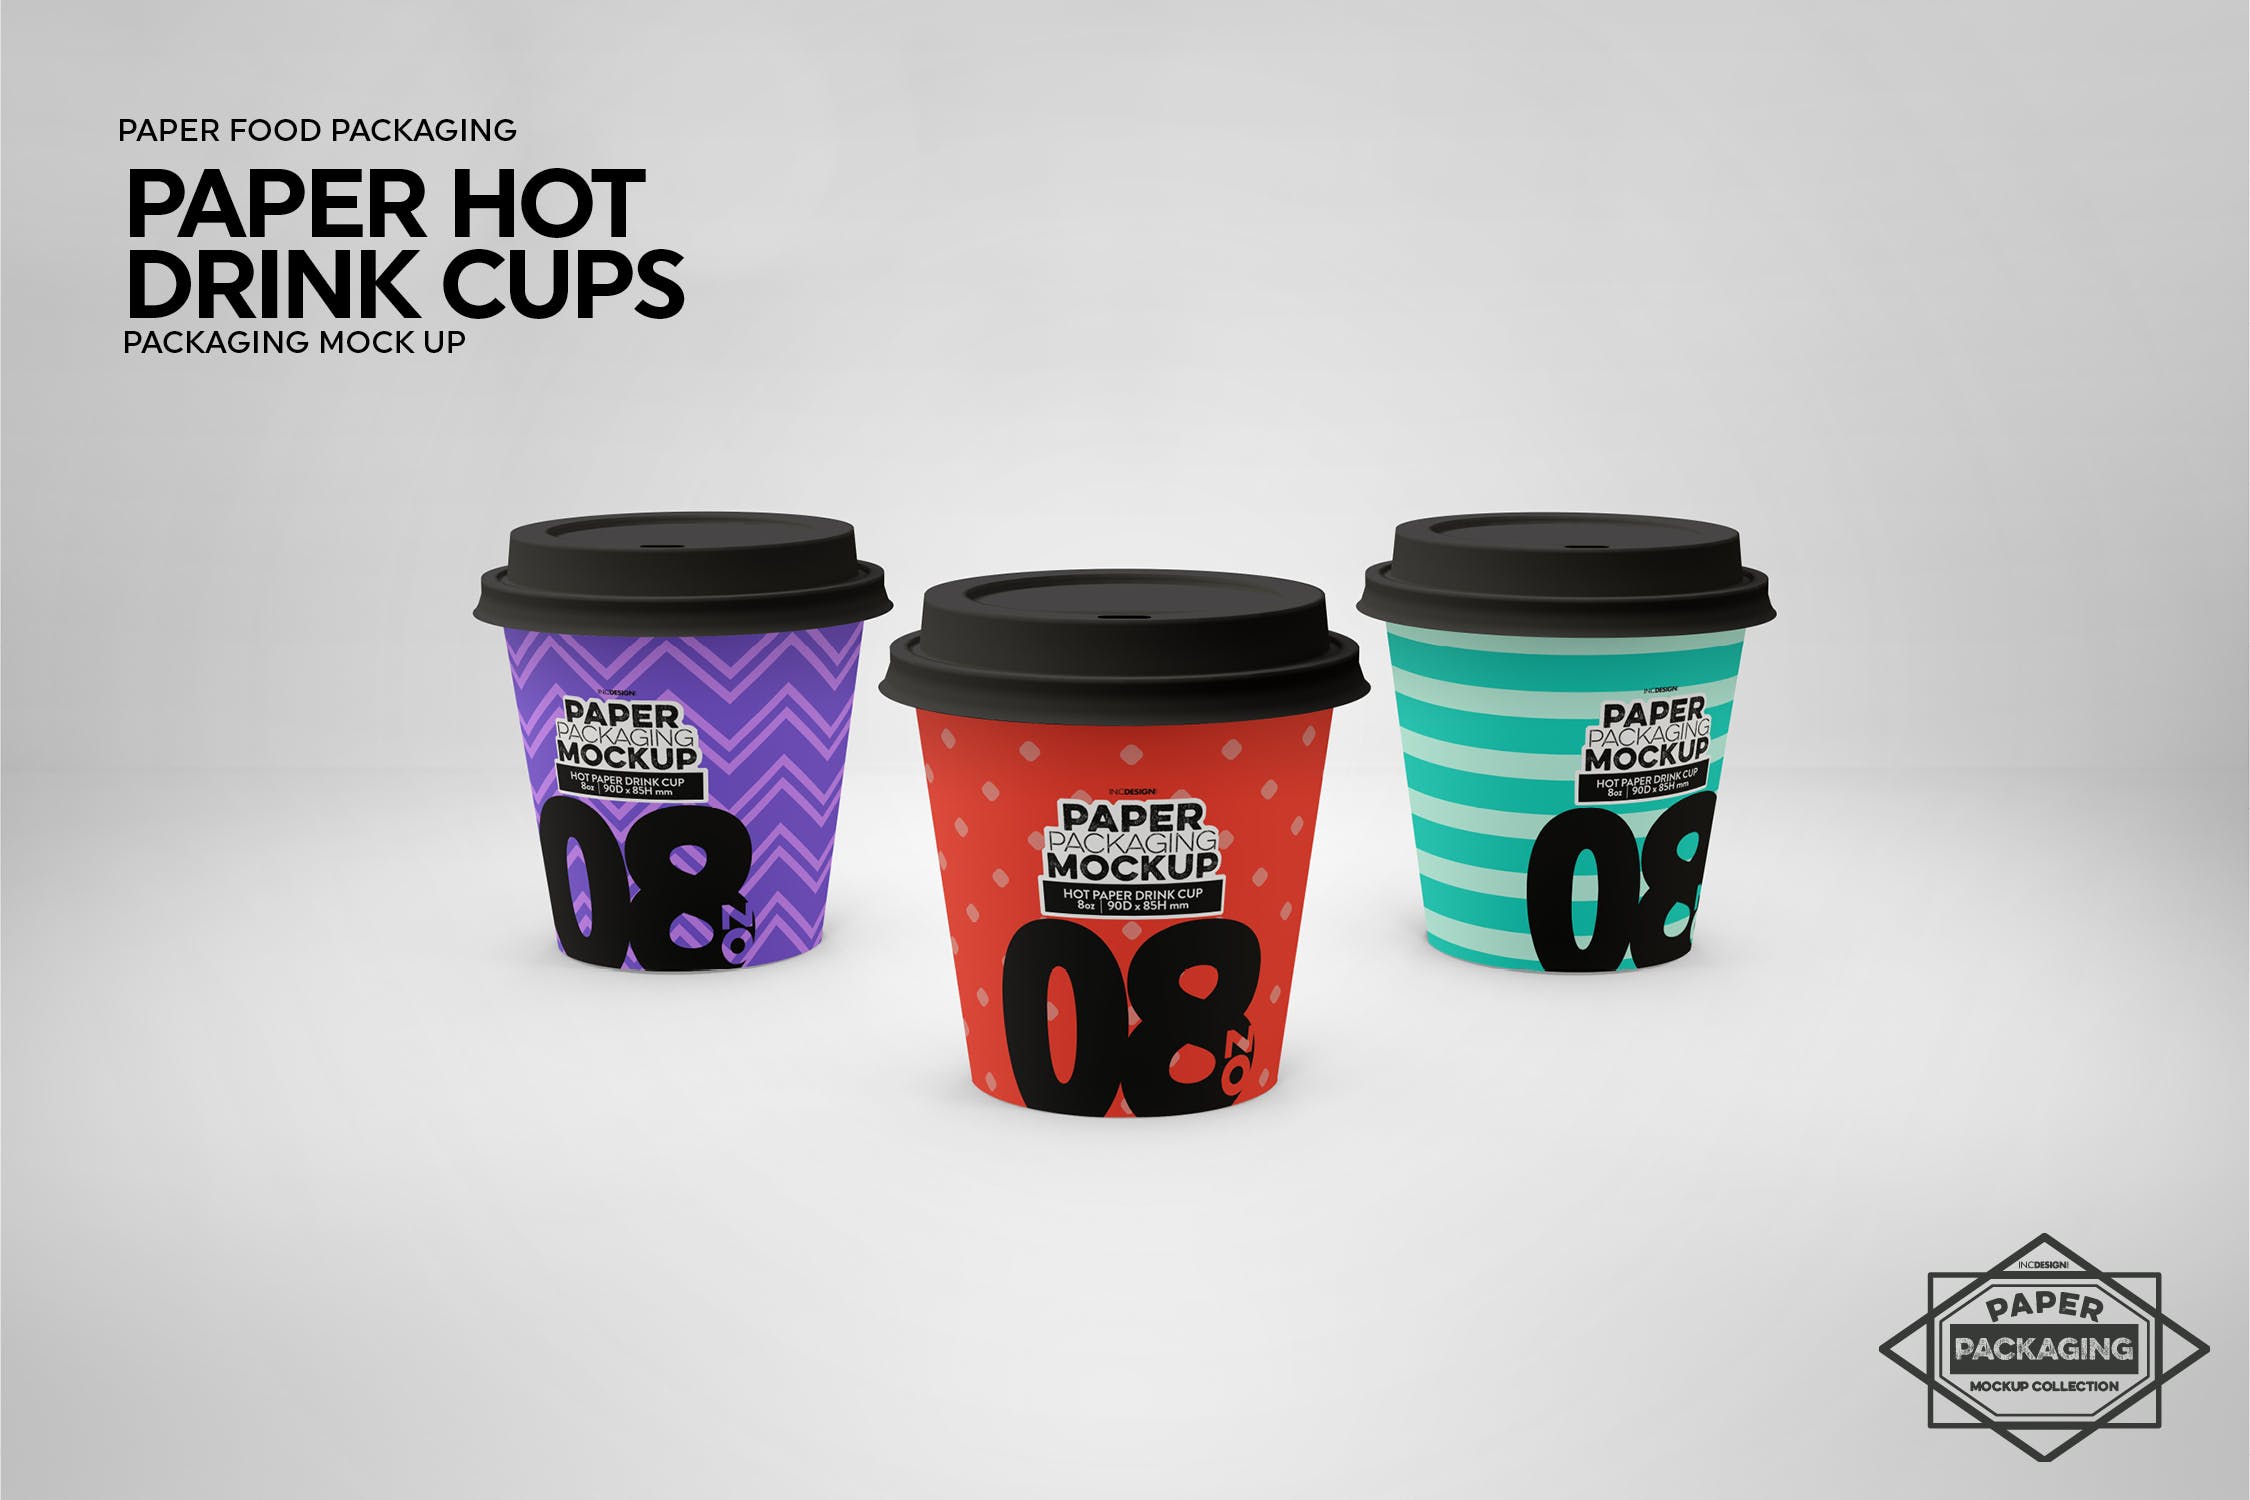 热饮一次性纸杯外观设计第一素材精选 Paper Hot Drink Cups Packaging Mockup插图(14)